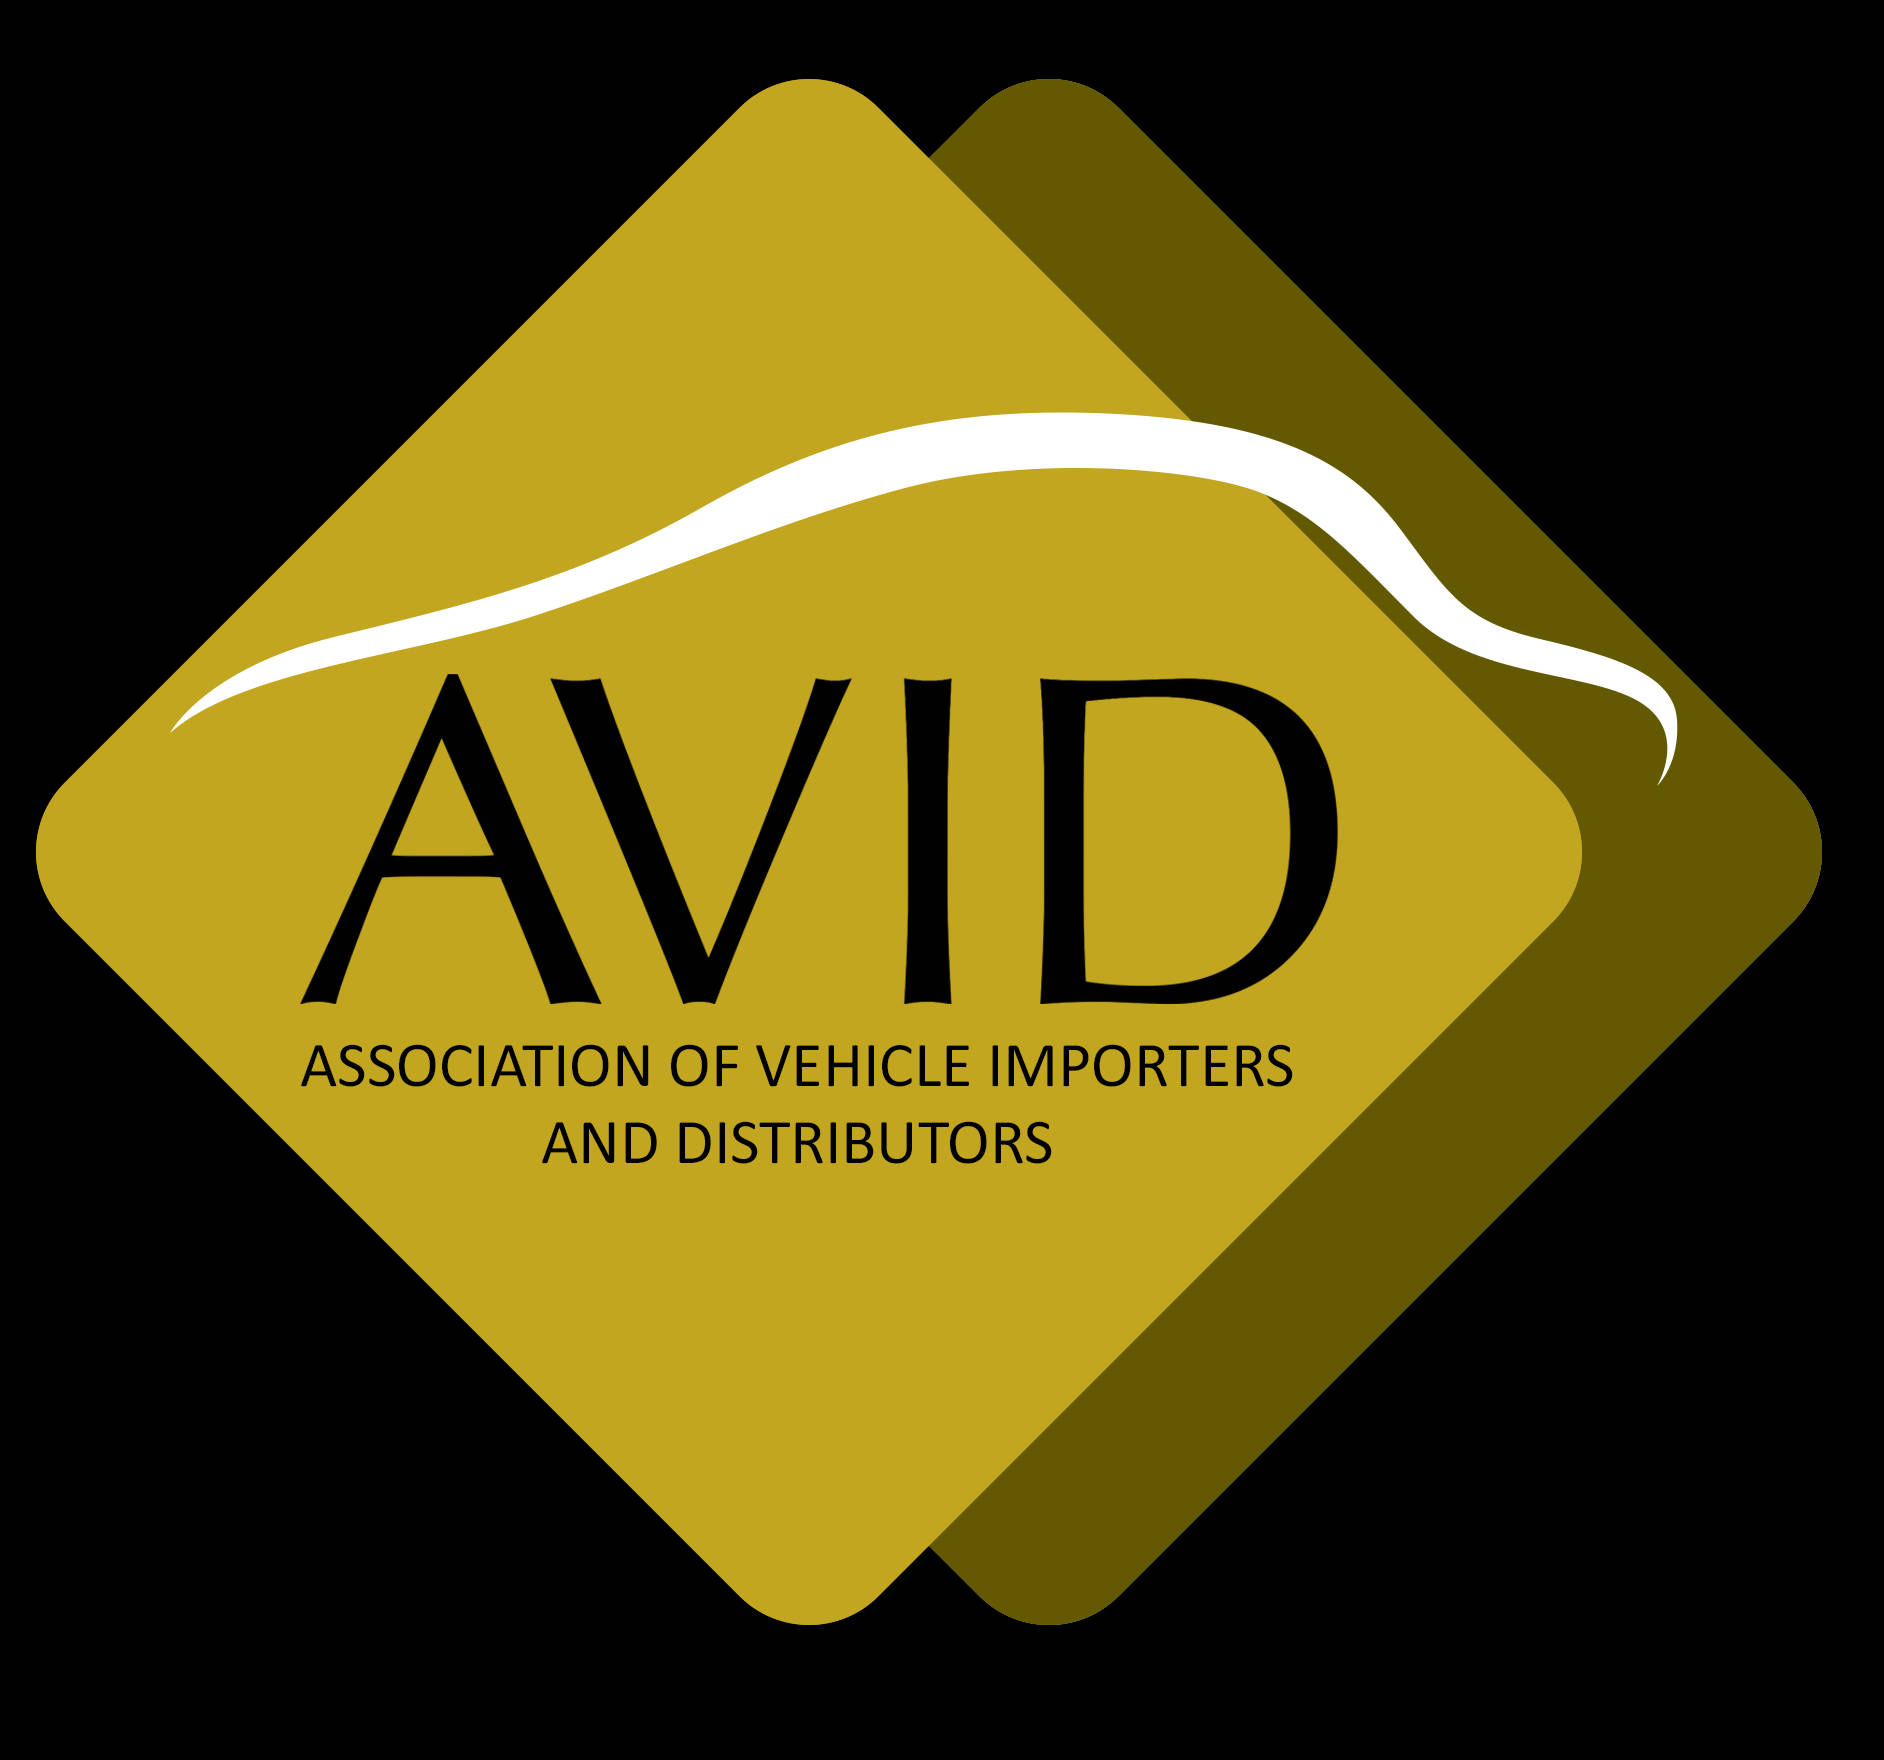 Avid Organization Logo Wallpaper